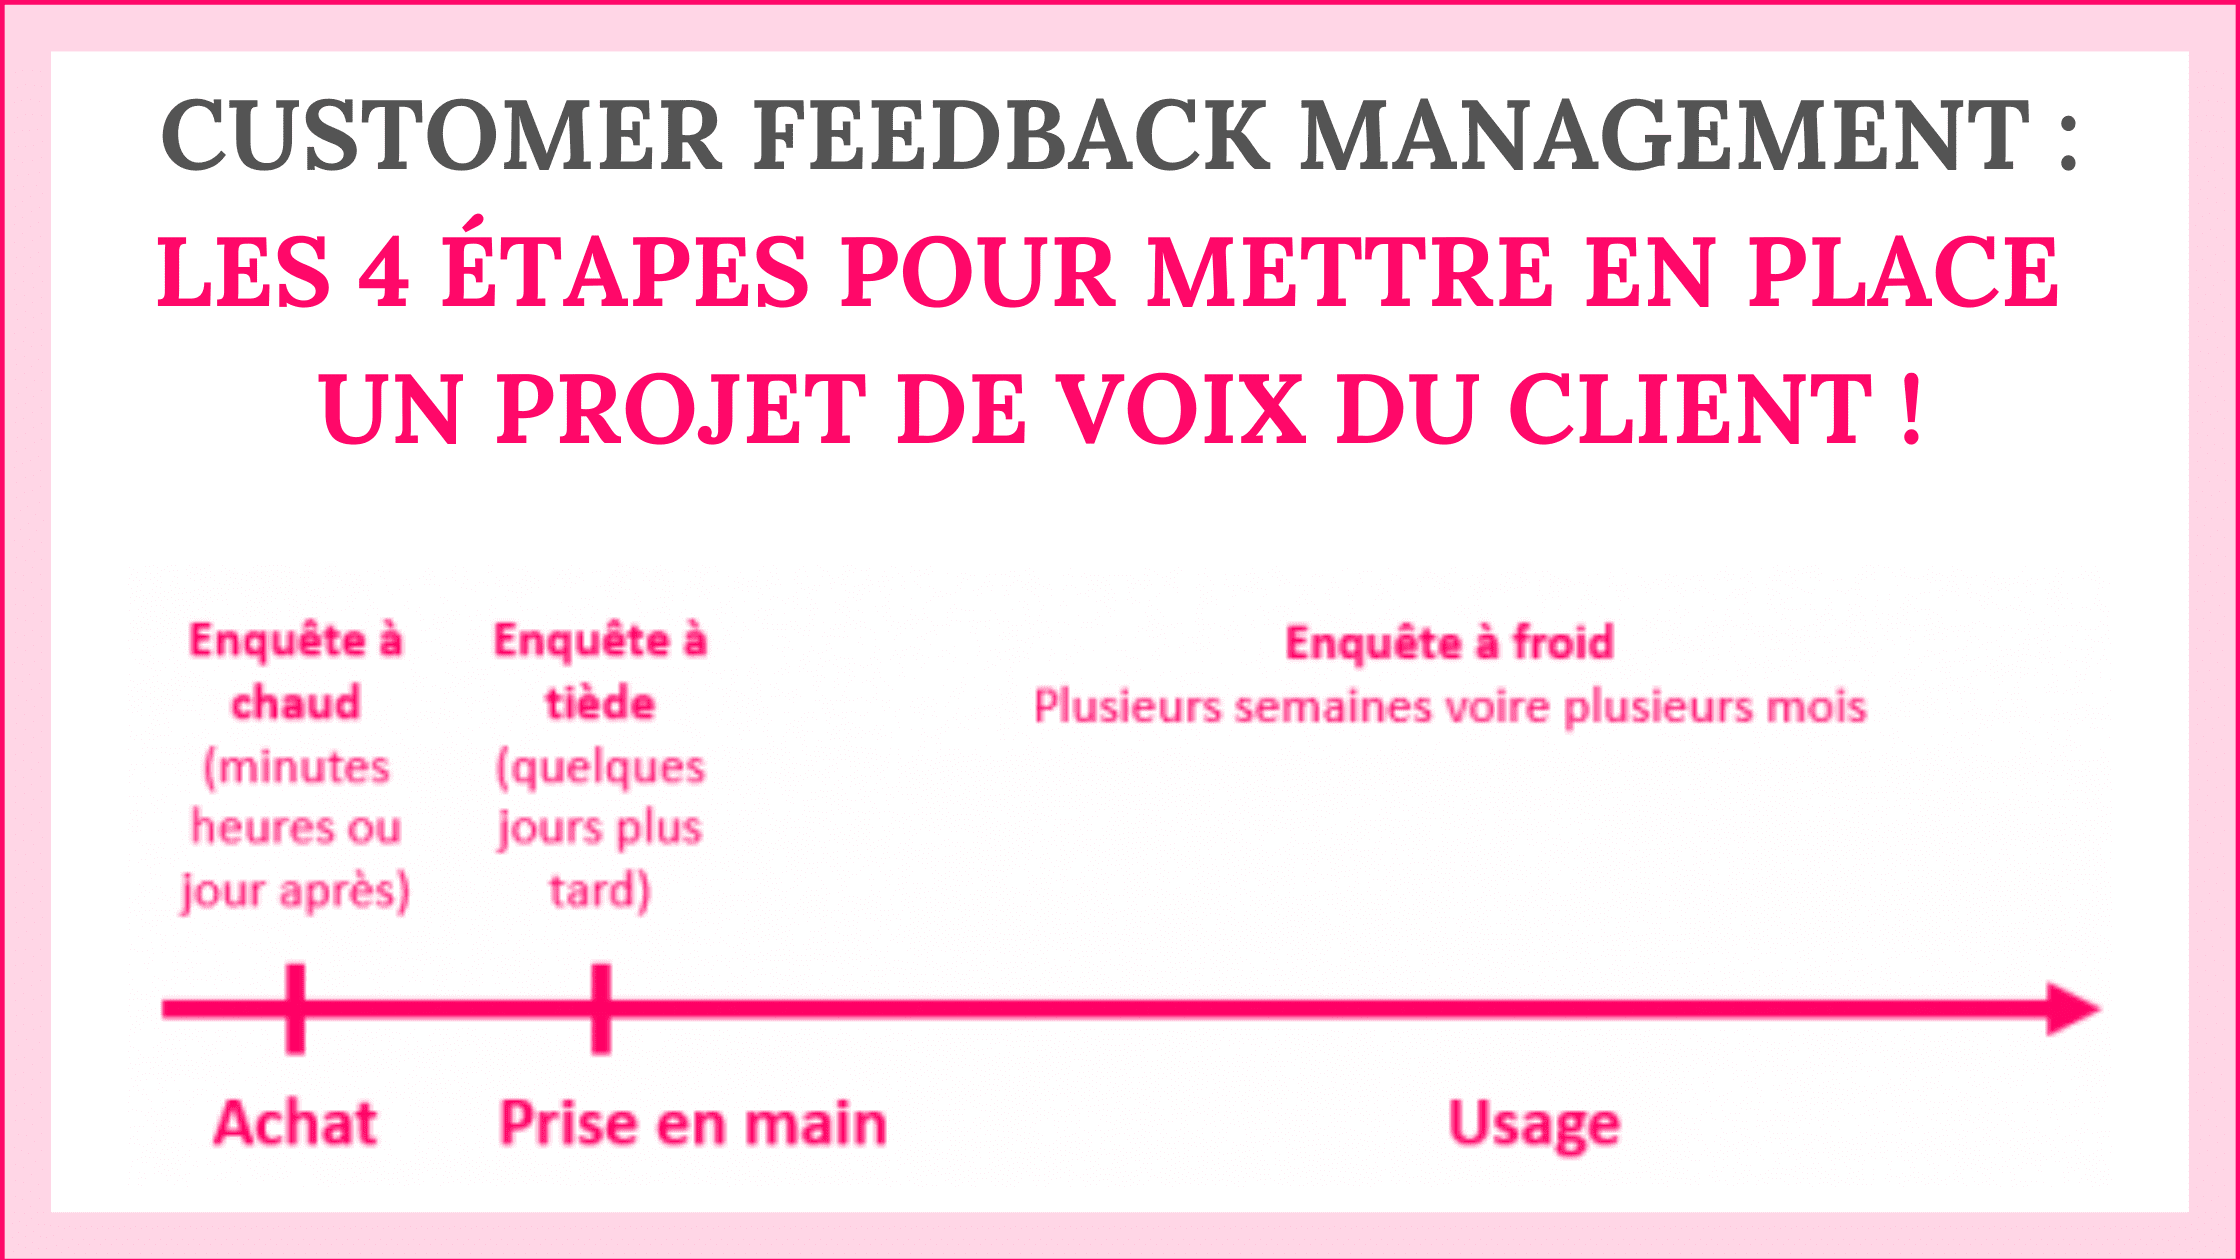 Customer Feedback Management : les 4 étapes pour mettre en place un projet de Voix du Client ! 20